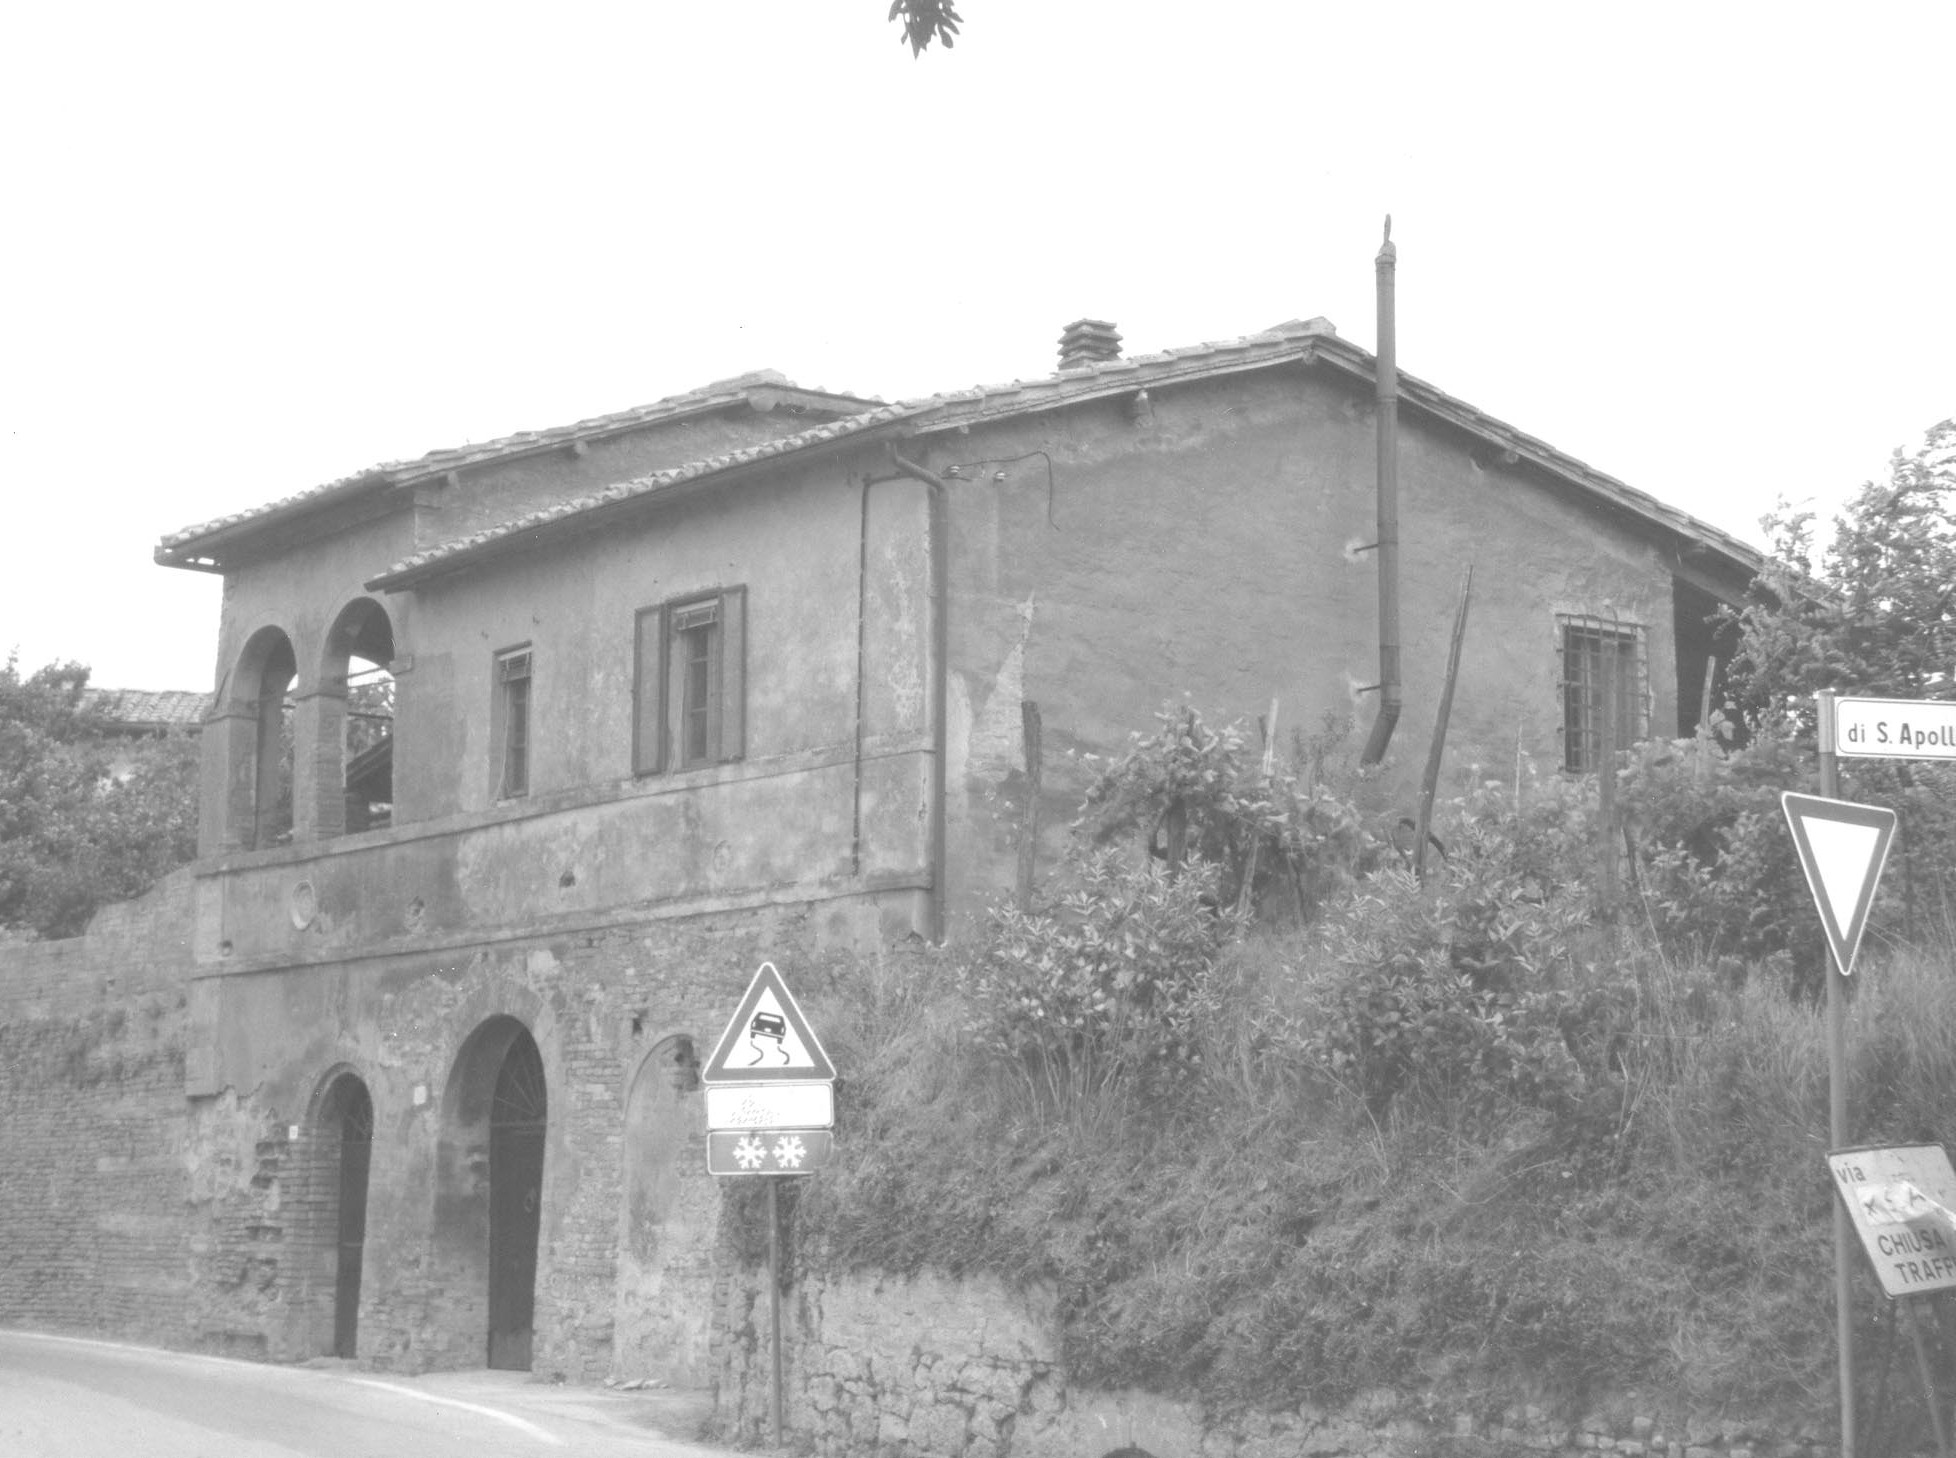 Podere Casale (casa, rurale) - Siena (SI) 